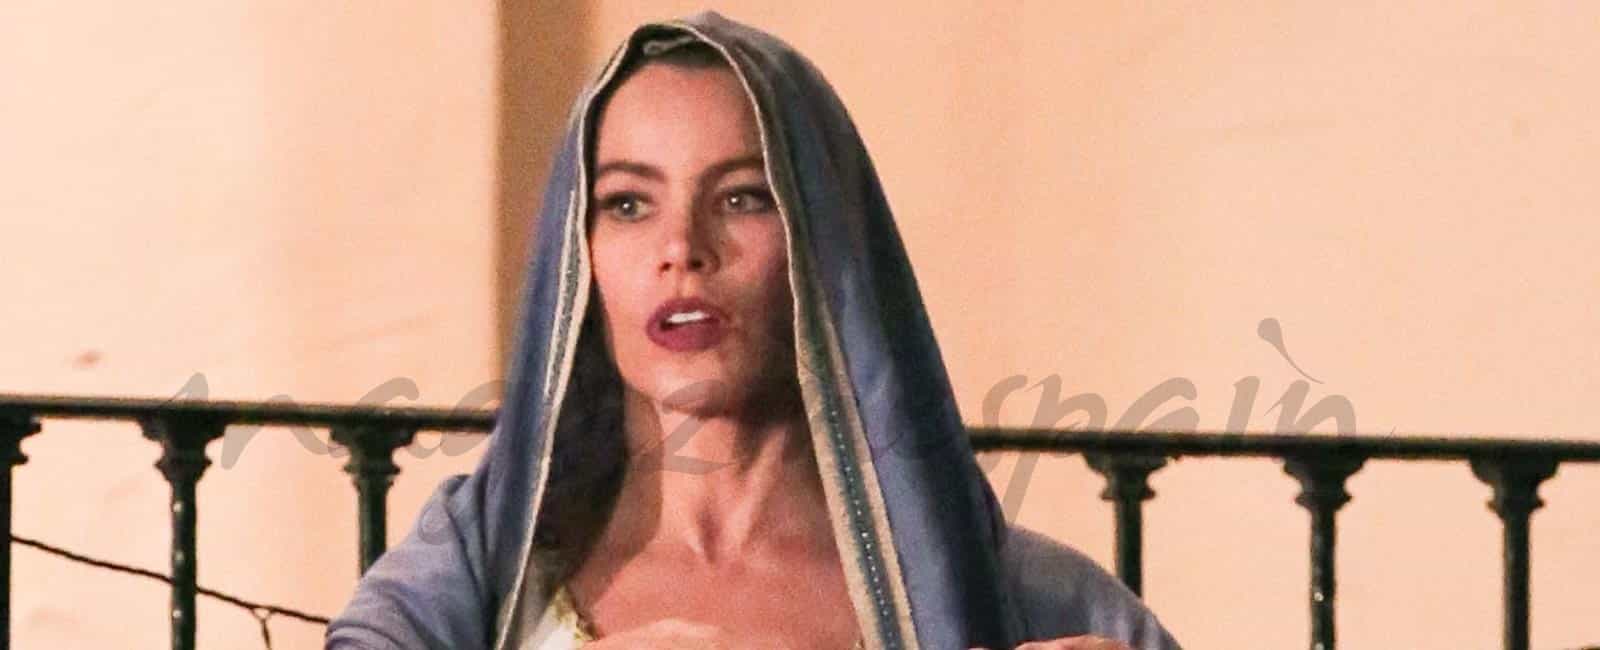 Sofía Vergara, la actriz mejor pagada de la televisión, en el papel de la Virgen María